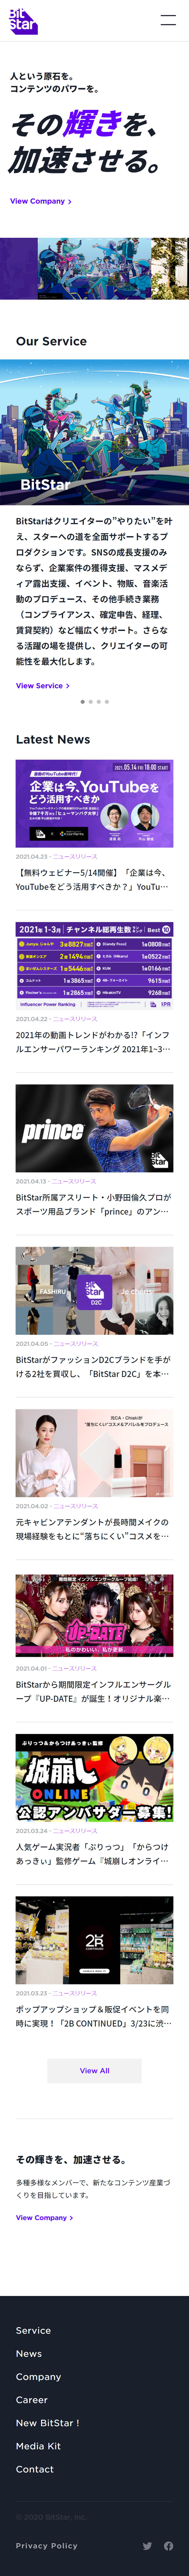 株式会社BitStar